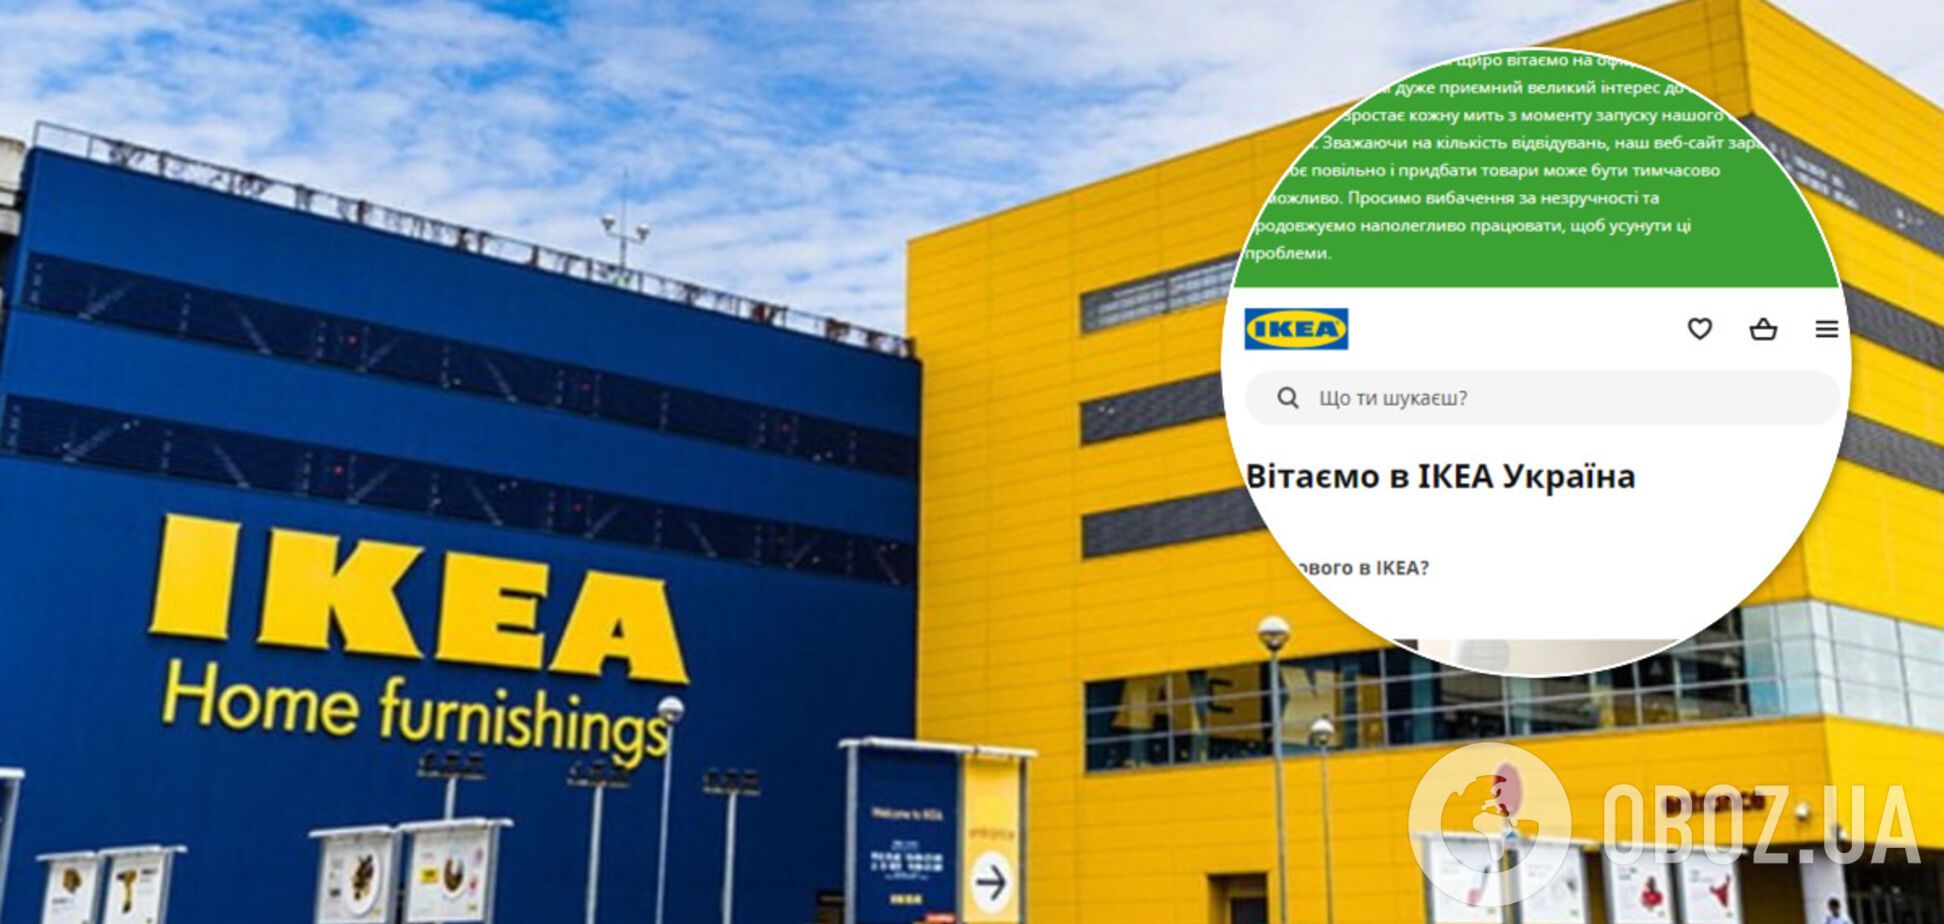 Официальный сайт IKEA в Украине 'лег' через сутки после запуска: в чем причина и как теперь заказать